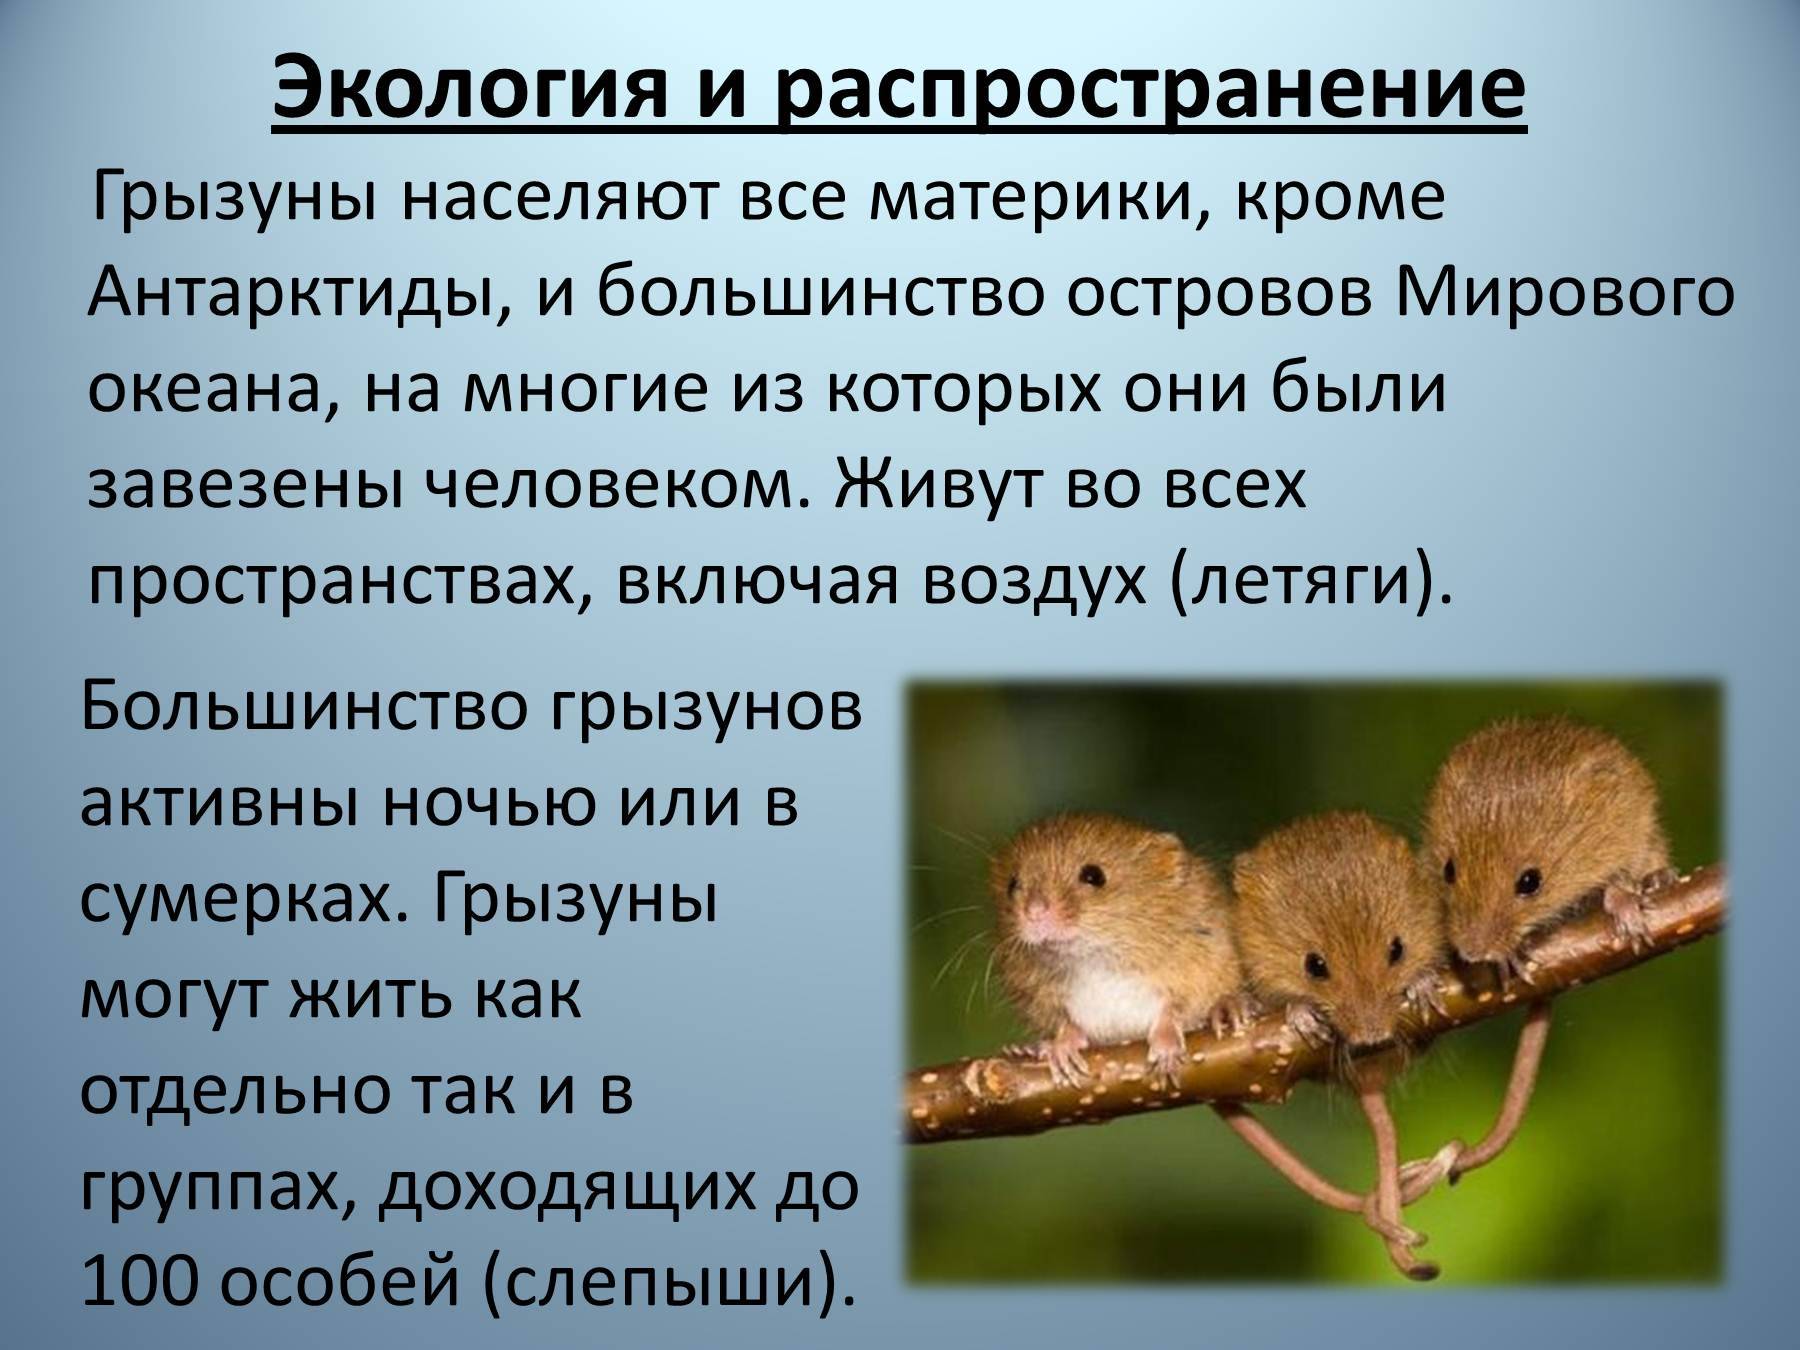 Зачем нужны вредители в природе? статья - otpugiwateli.ru